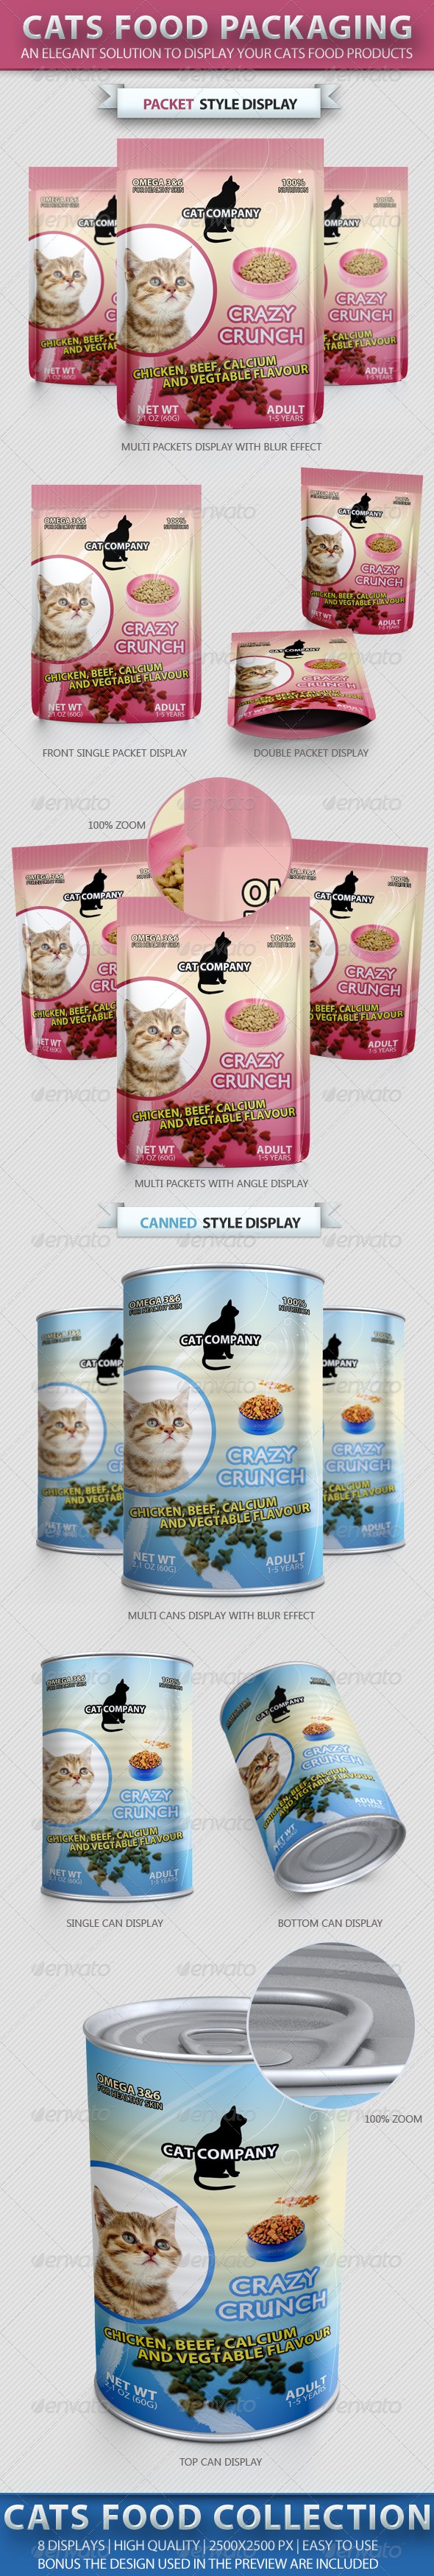 ماکاپ / موکاپ بسته بندی غذای گربه